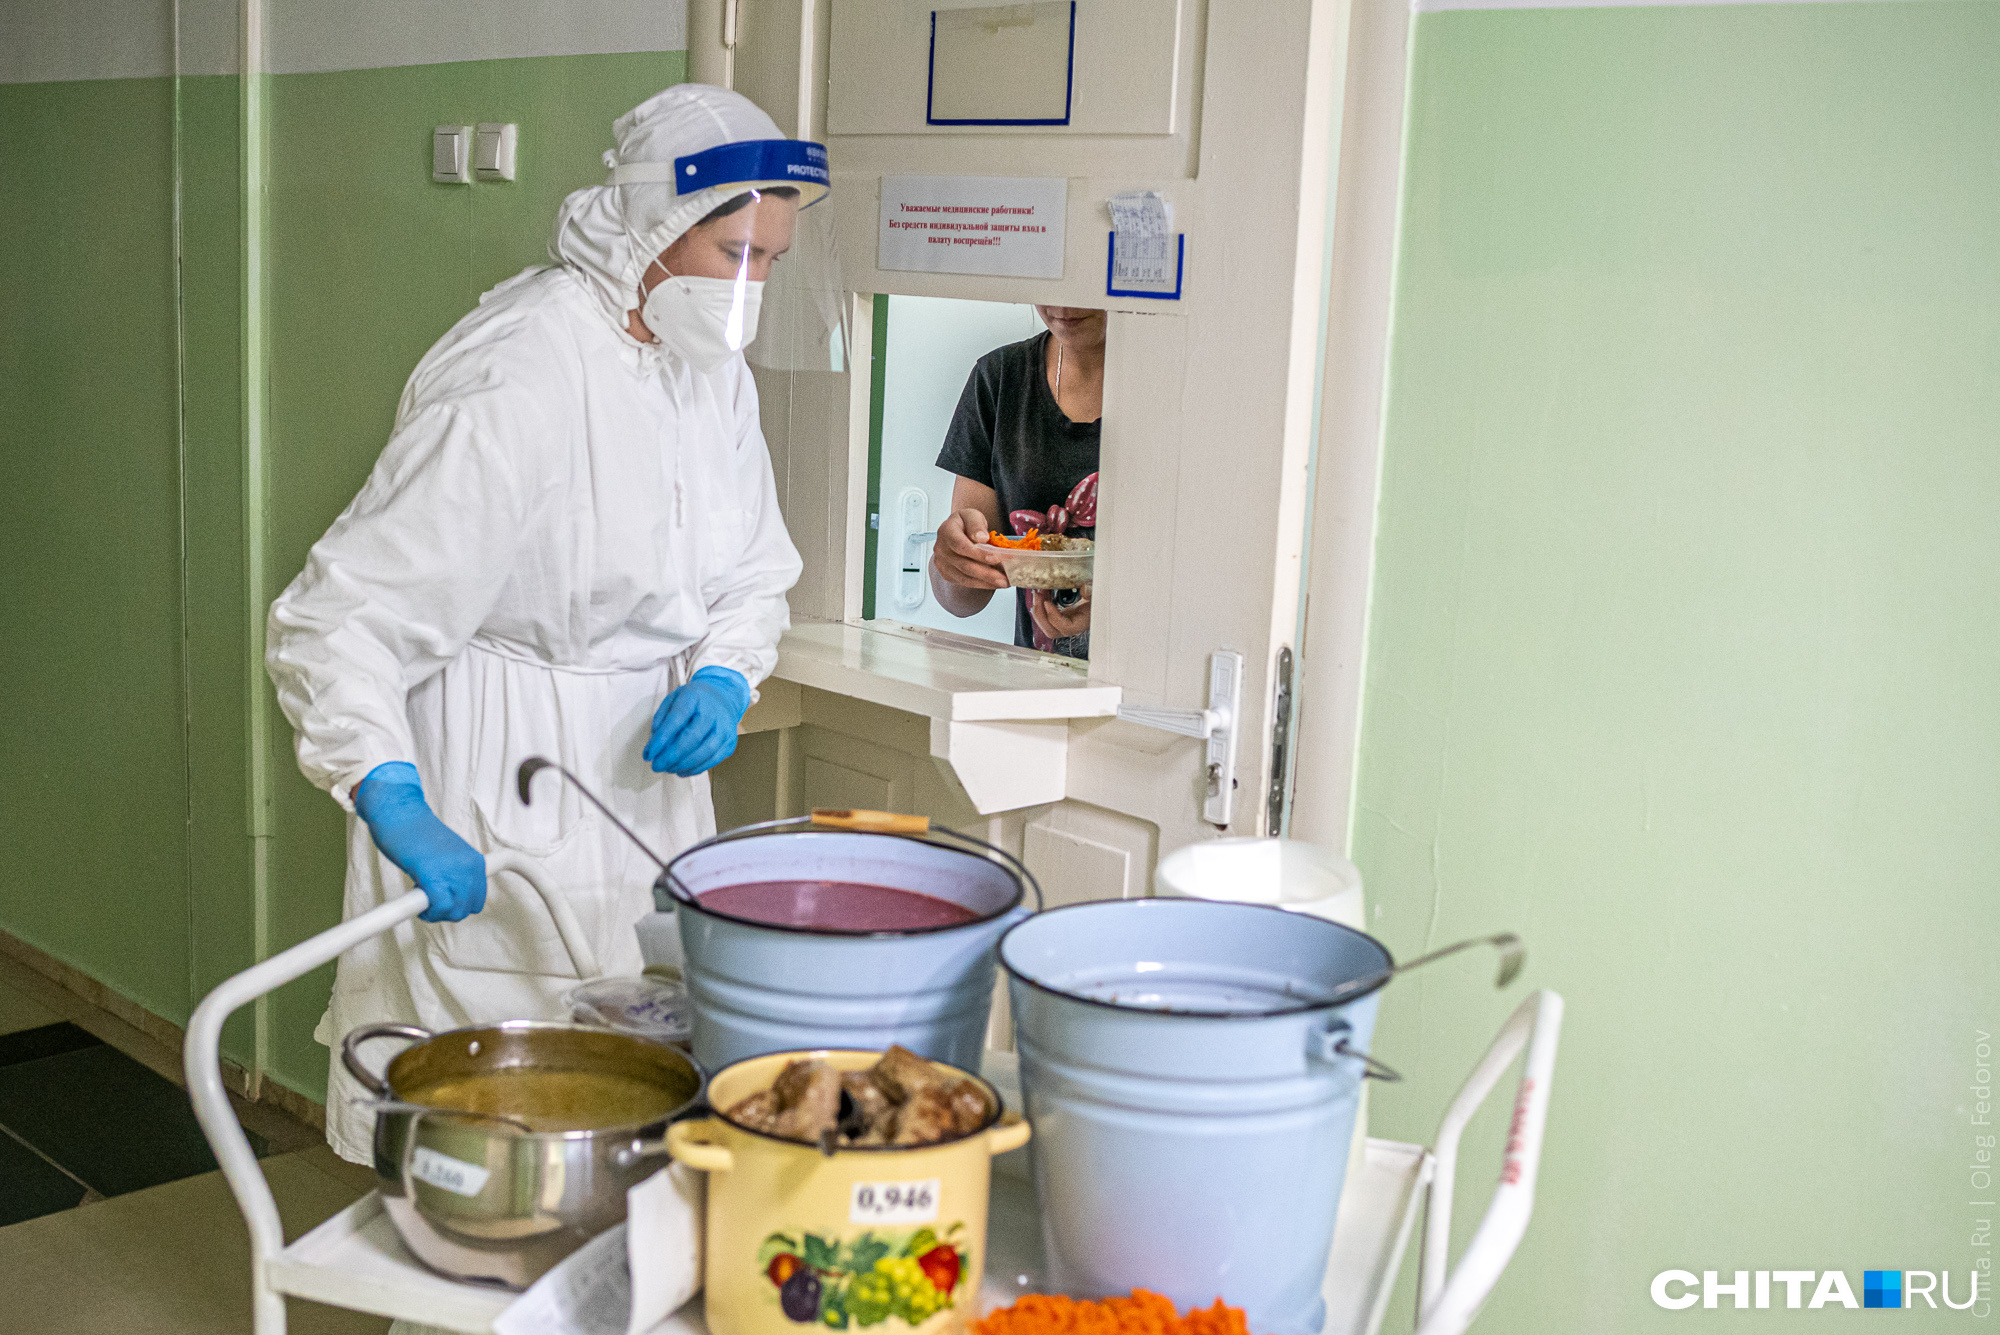 Запред Щеглова — о работе «Мед-Фуда» в Забайкалье: «Совершенно недостойно кормят пациентов»